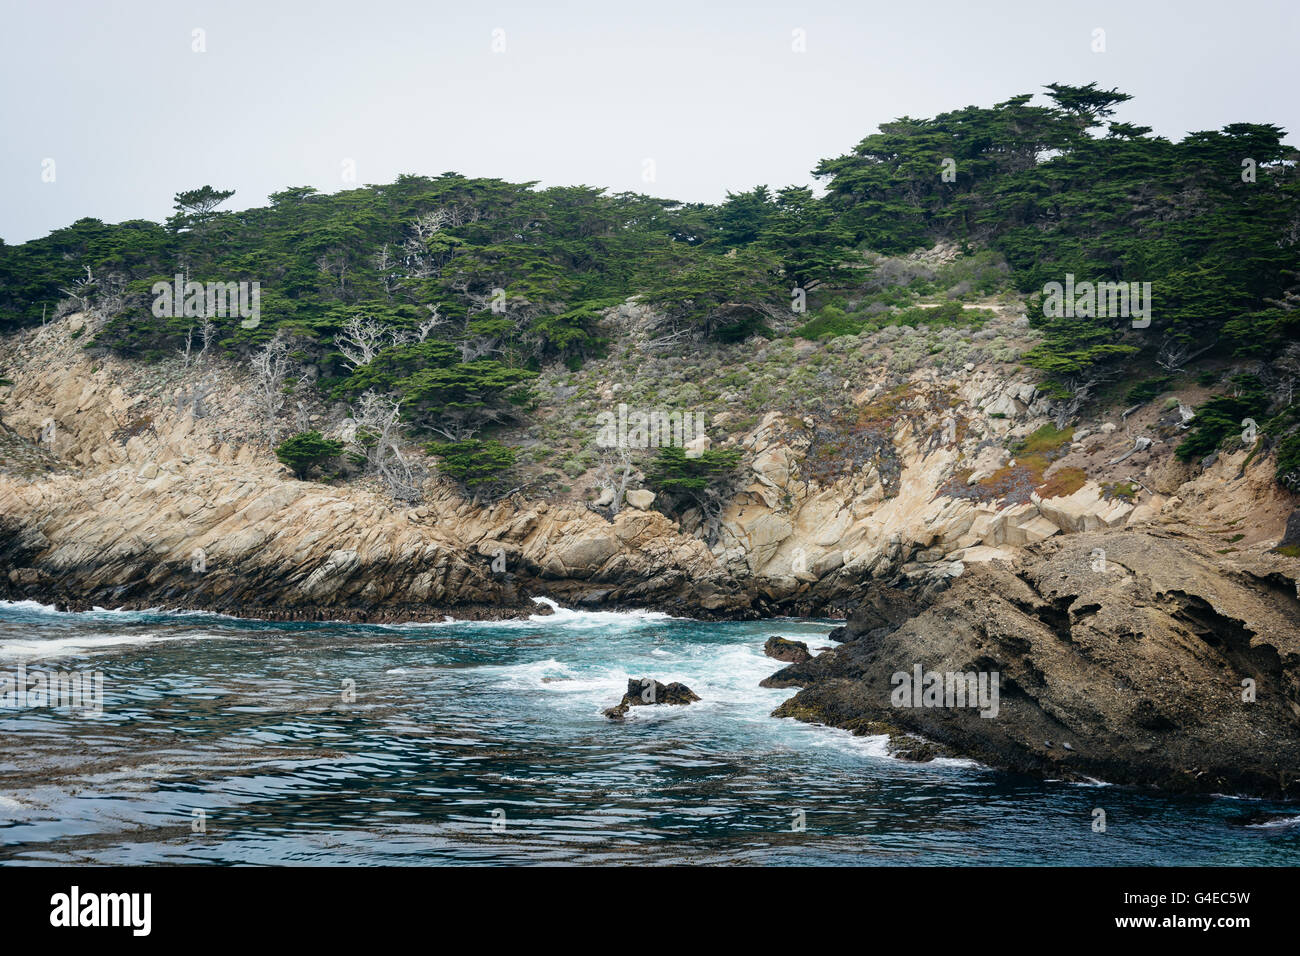 Vue sur la côte rocheuse à l'état de Point Lobos Parc naturel, dans la région de Carmel, en Californie. Banque D'Images